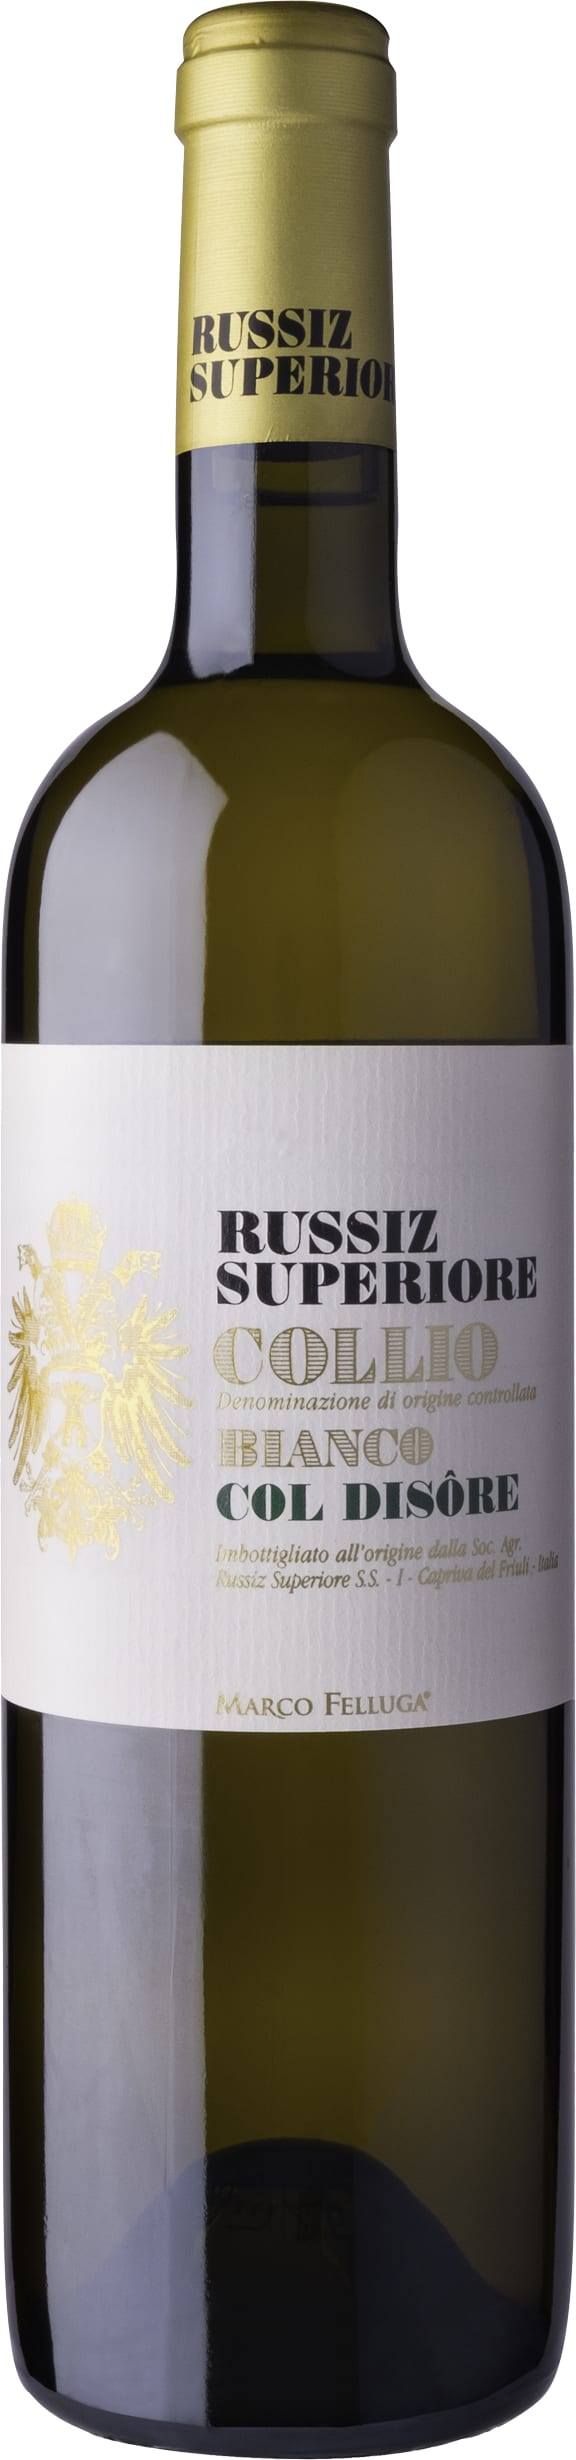 Russiz Superiore Bianco Col Disore, Collio 2013 75cl - Buy Russiz Superiore Wines from GREAT WINES DIRECT wine shop